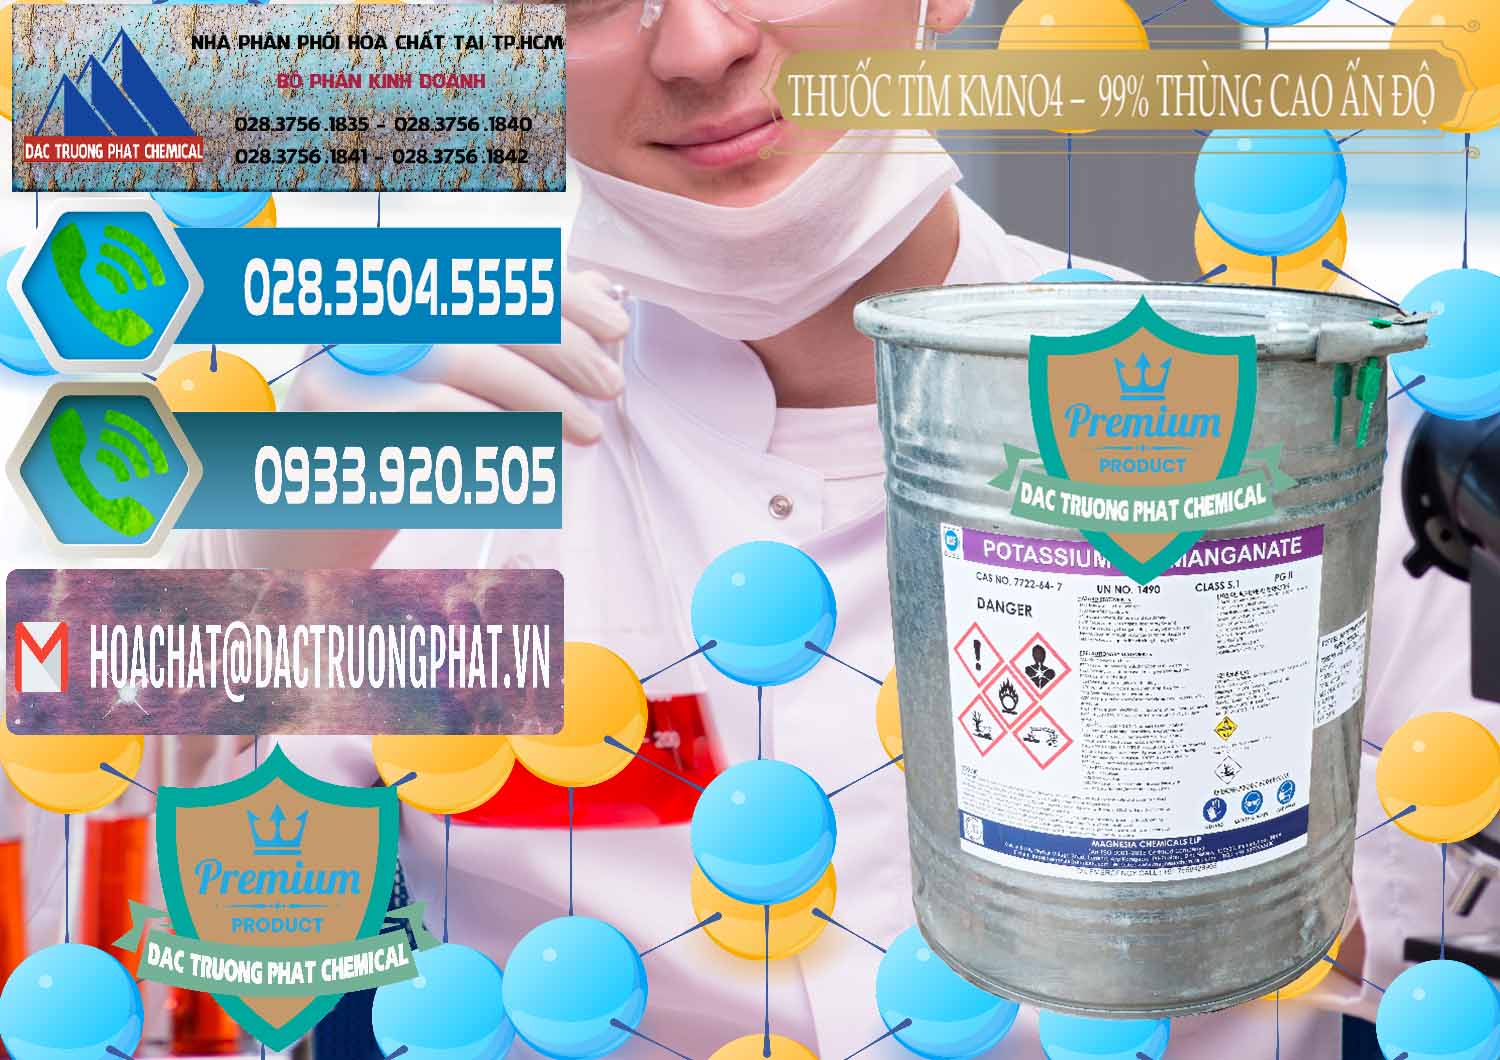 Nơi chuyên cung ứng ( bán ) Thuốc Tím - KMNO4 Thùng Cao 99% Magnesia Chemicals Ấn Độ India - 0164 - Công ty phân phối & cung cấp hóa chất tại TP.HCM - congtyhoachat.net